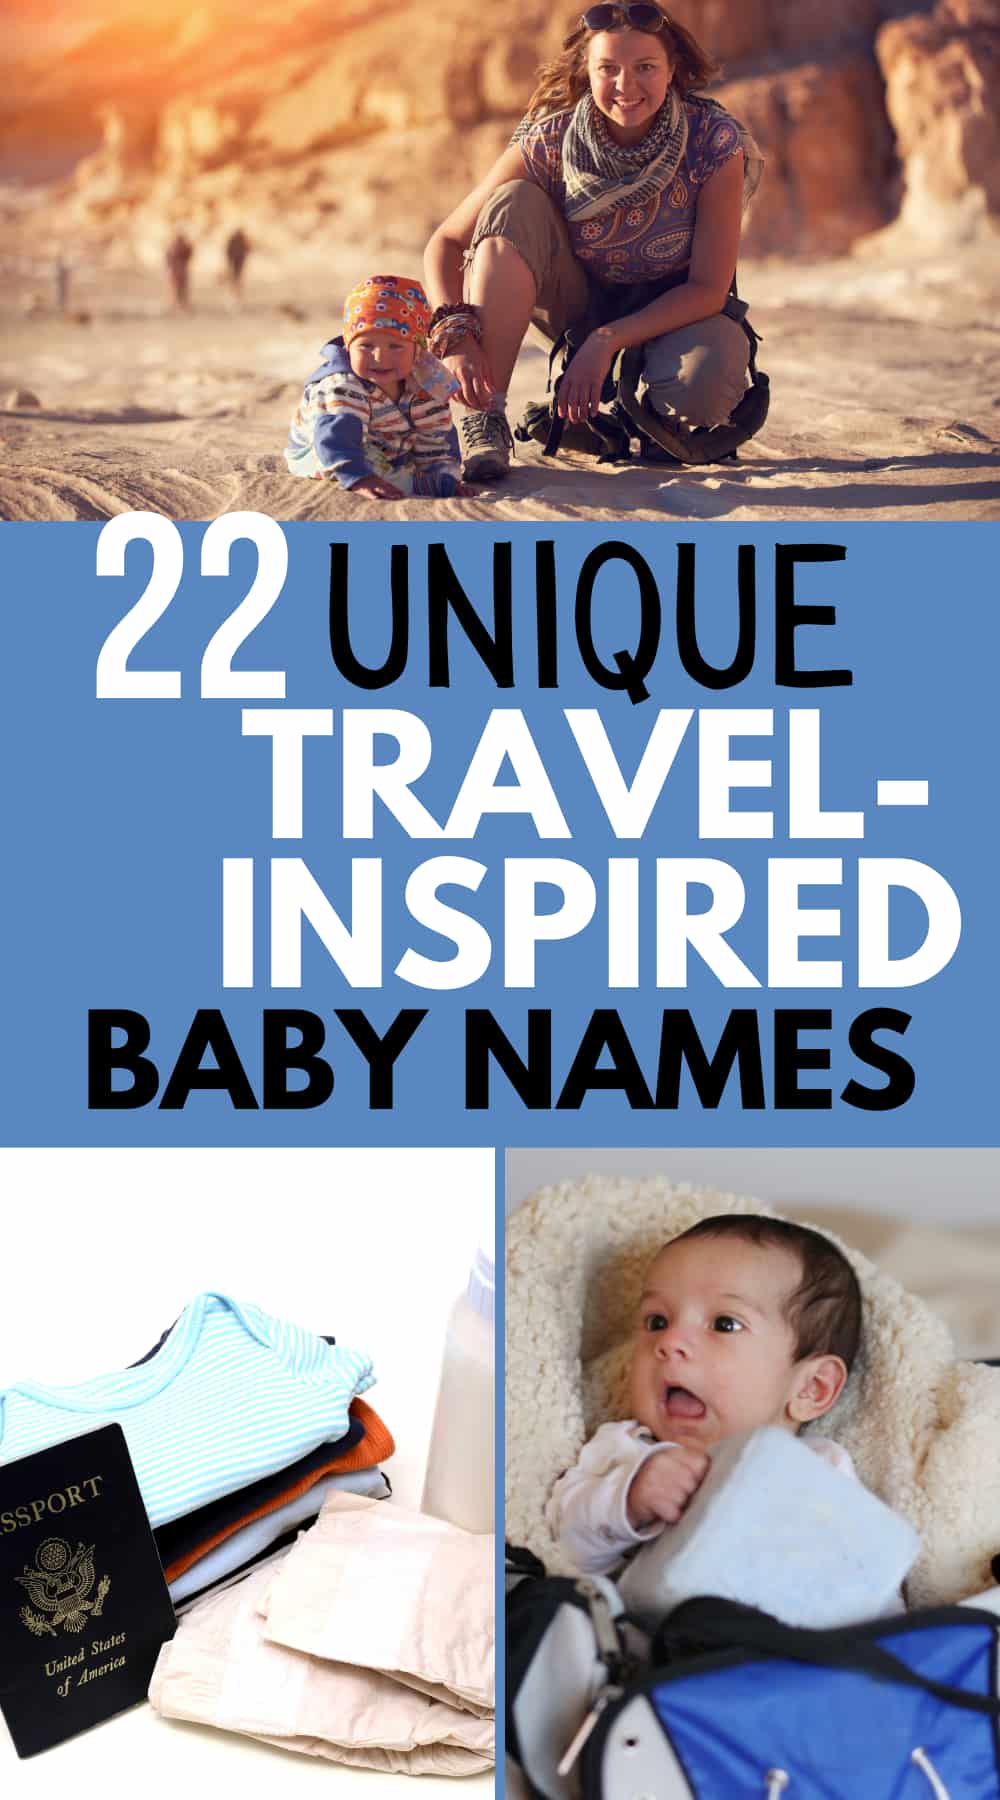 travel inspired baby girl names